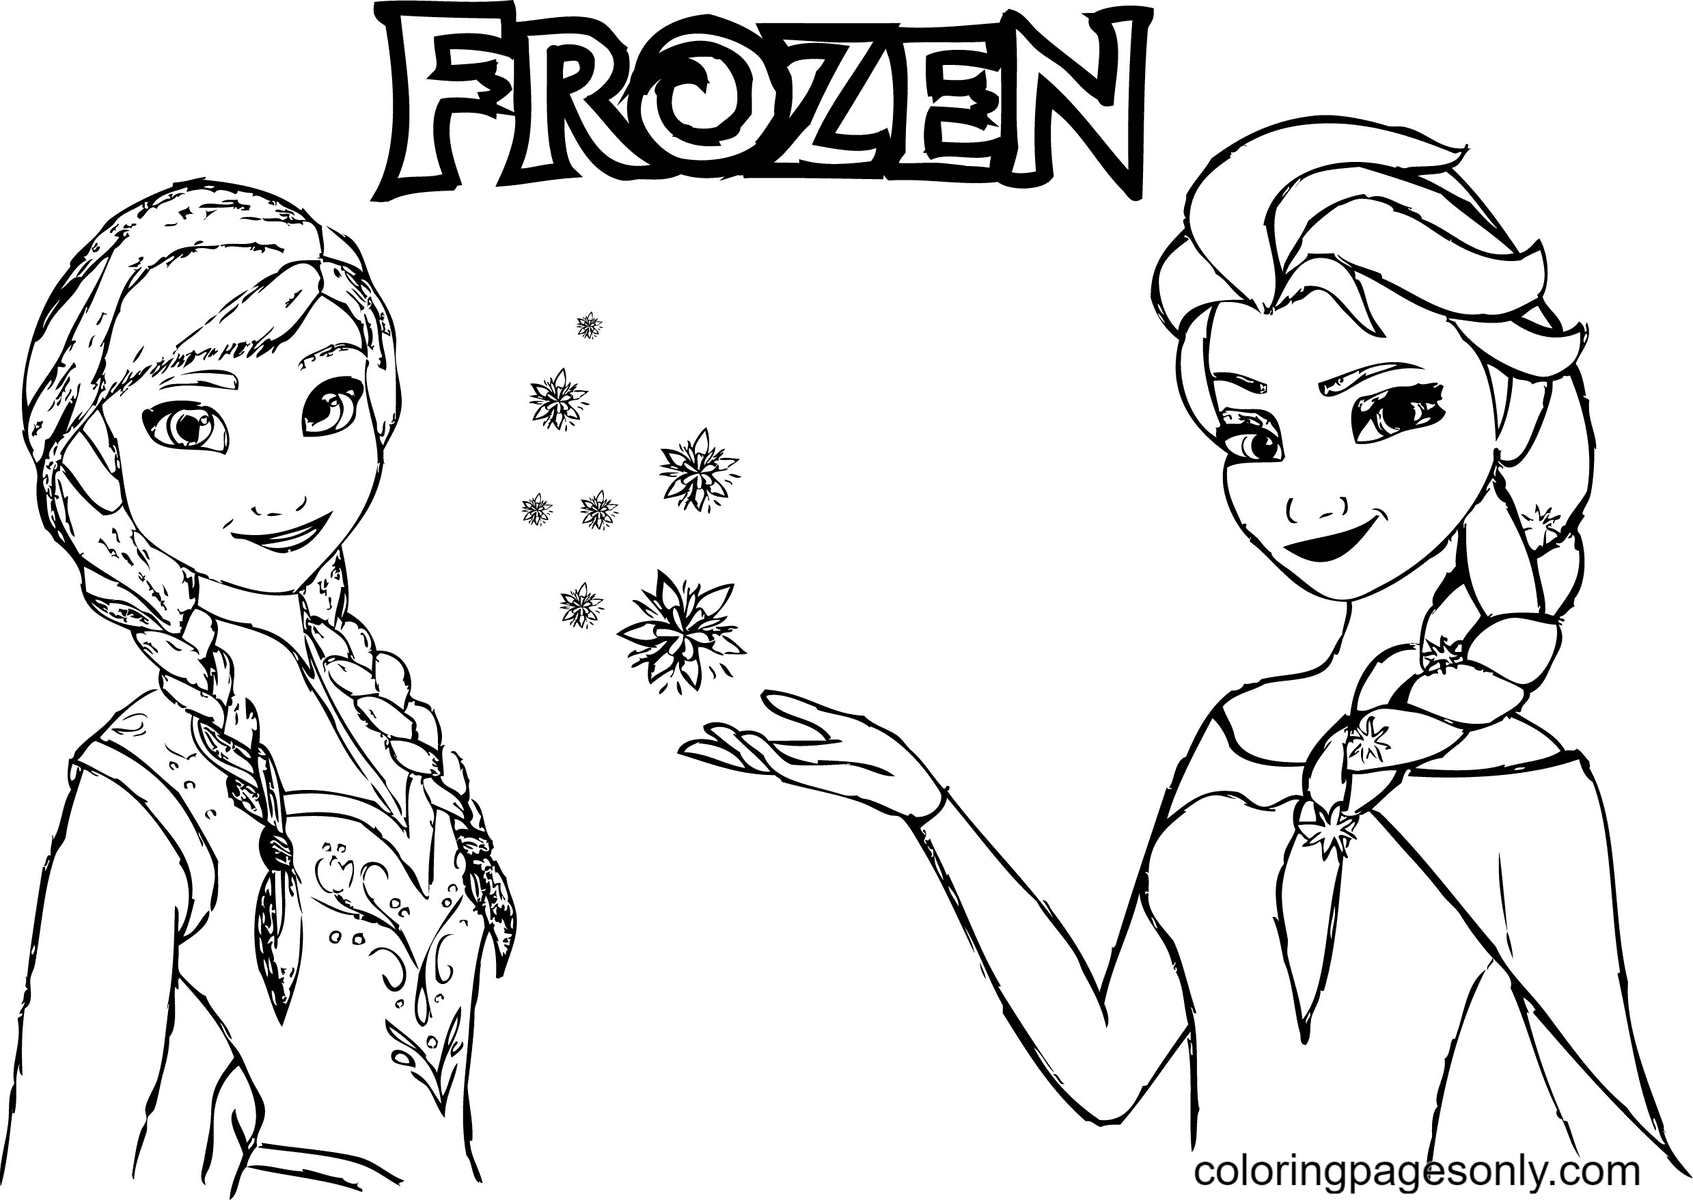 Disney Frozen Anna com Elsa de Elsa e Anna